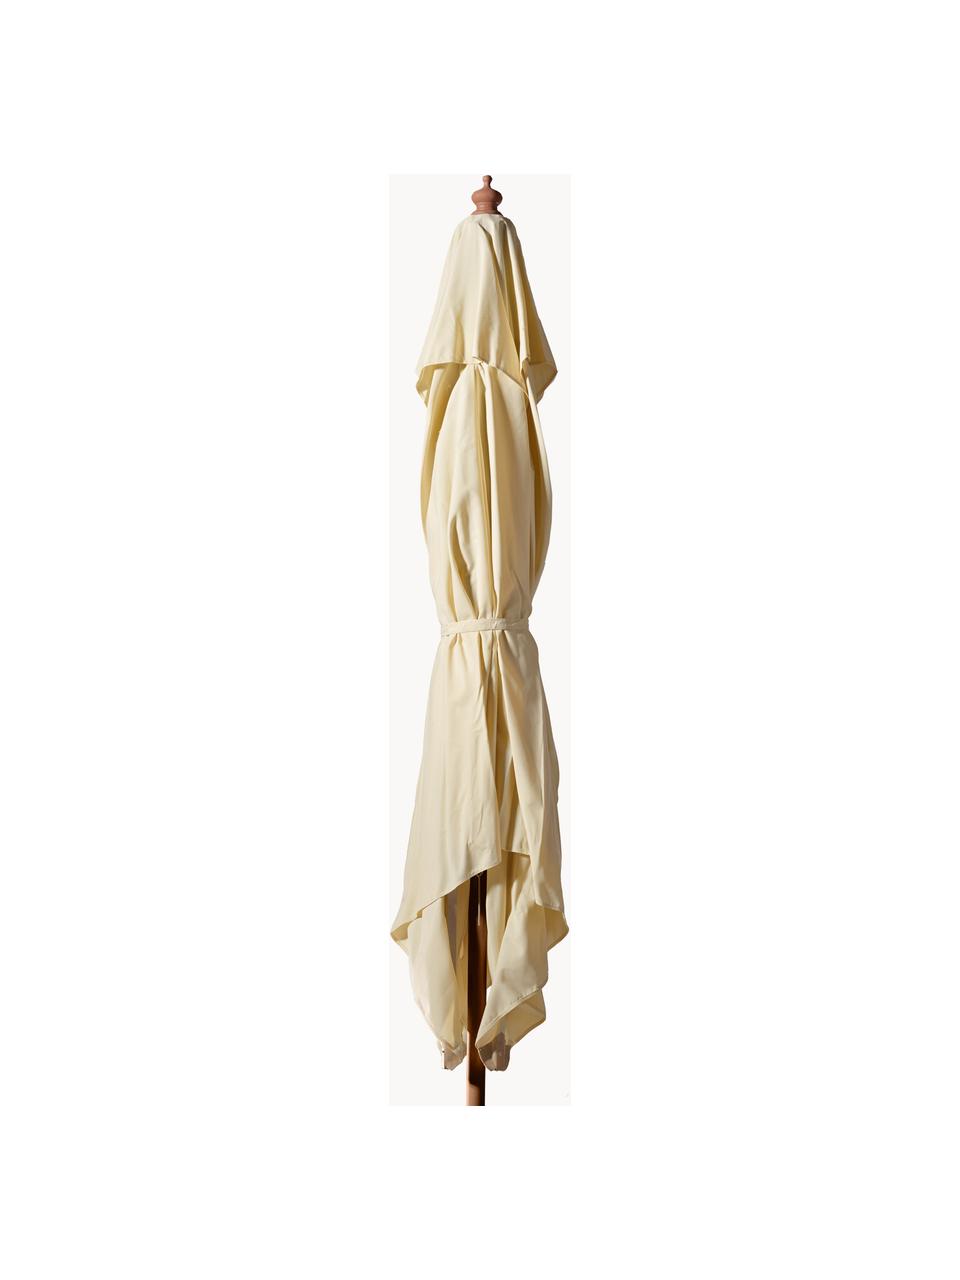 Sombrilla Alezio, An 300 cm, Estructura: madera de eucalipto, Blanco crema, madera clara, An 300 x Al 275 cm